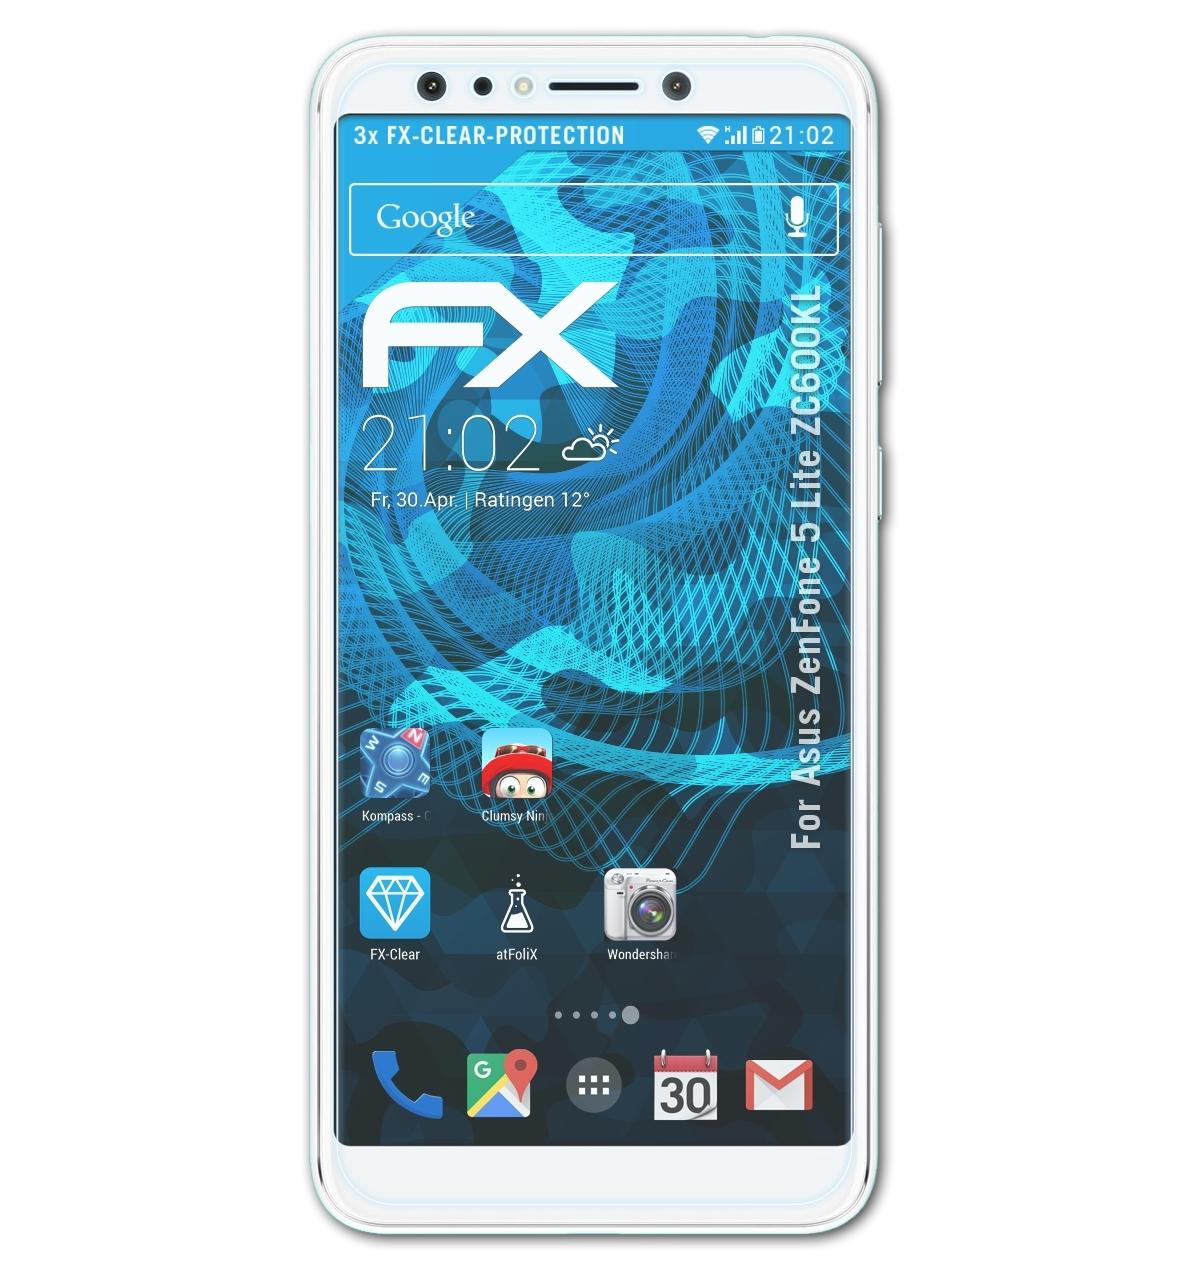 ATFOLIX 3x FX-Clear 5 (ZC600KL)) Asus Displayschutz(für ZenFone Lite